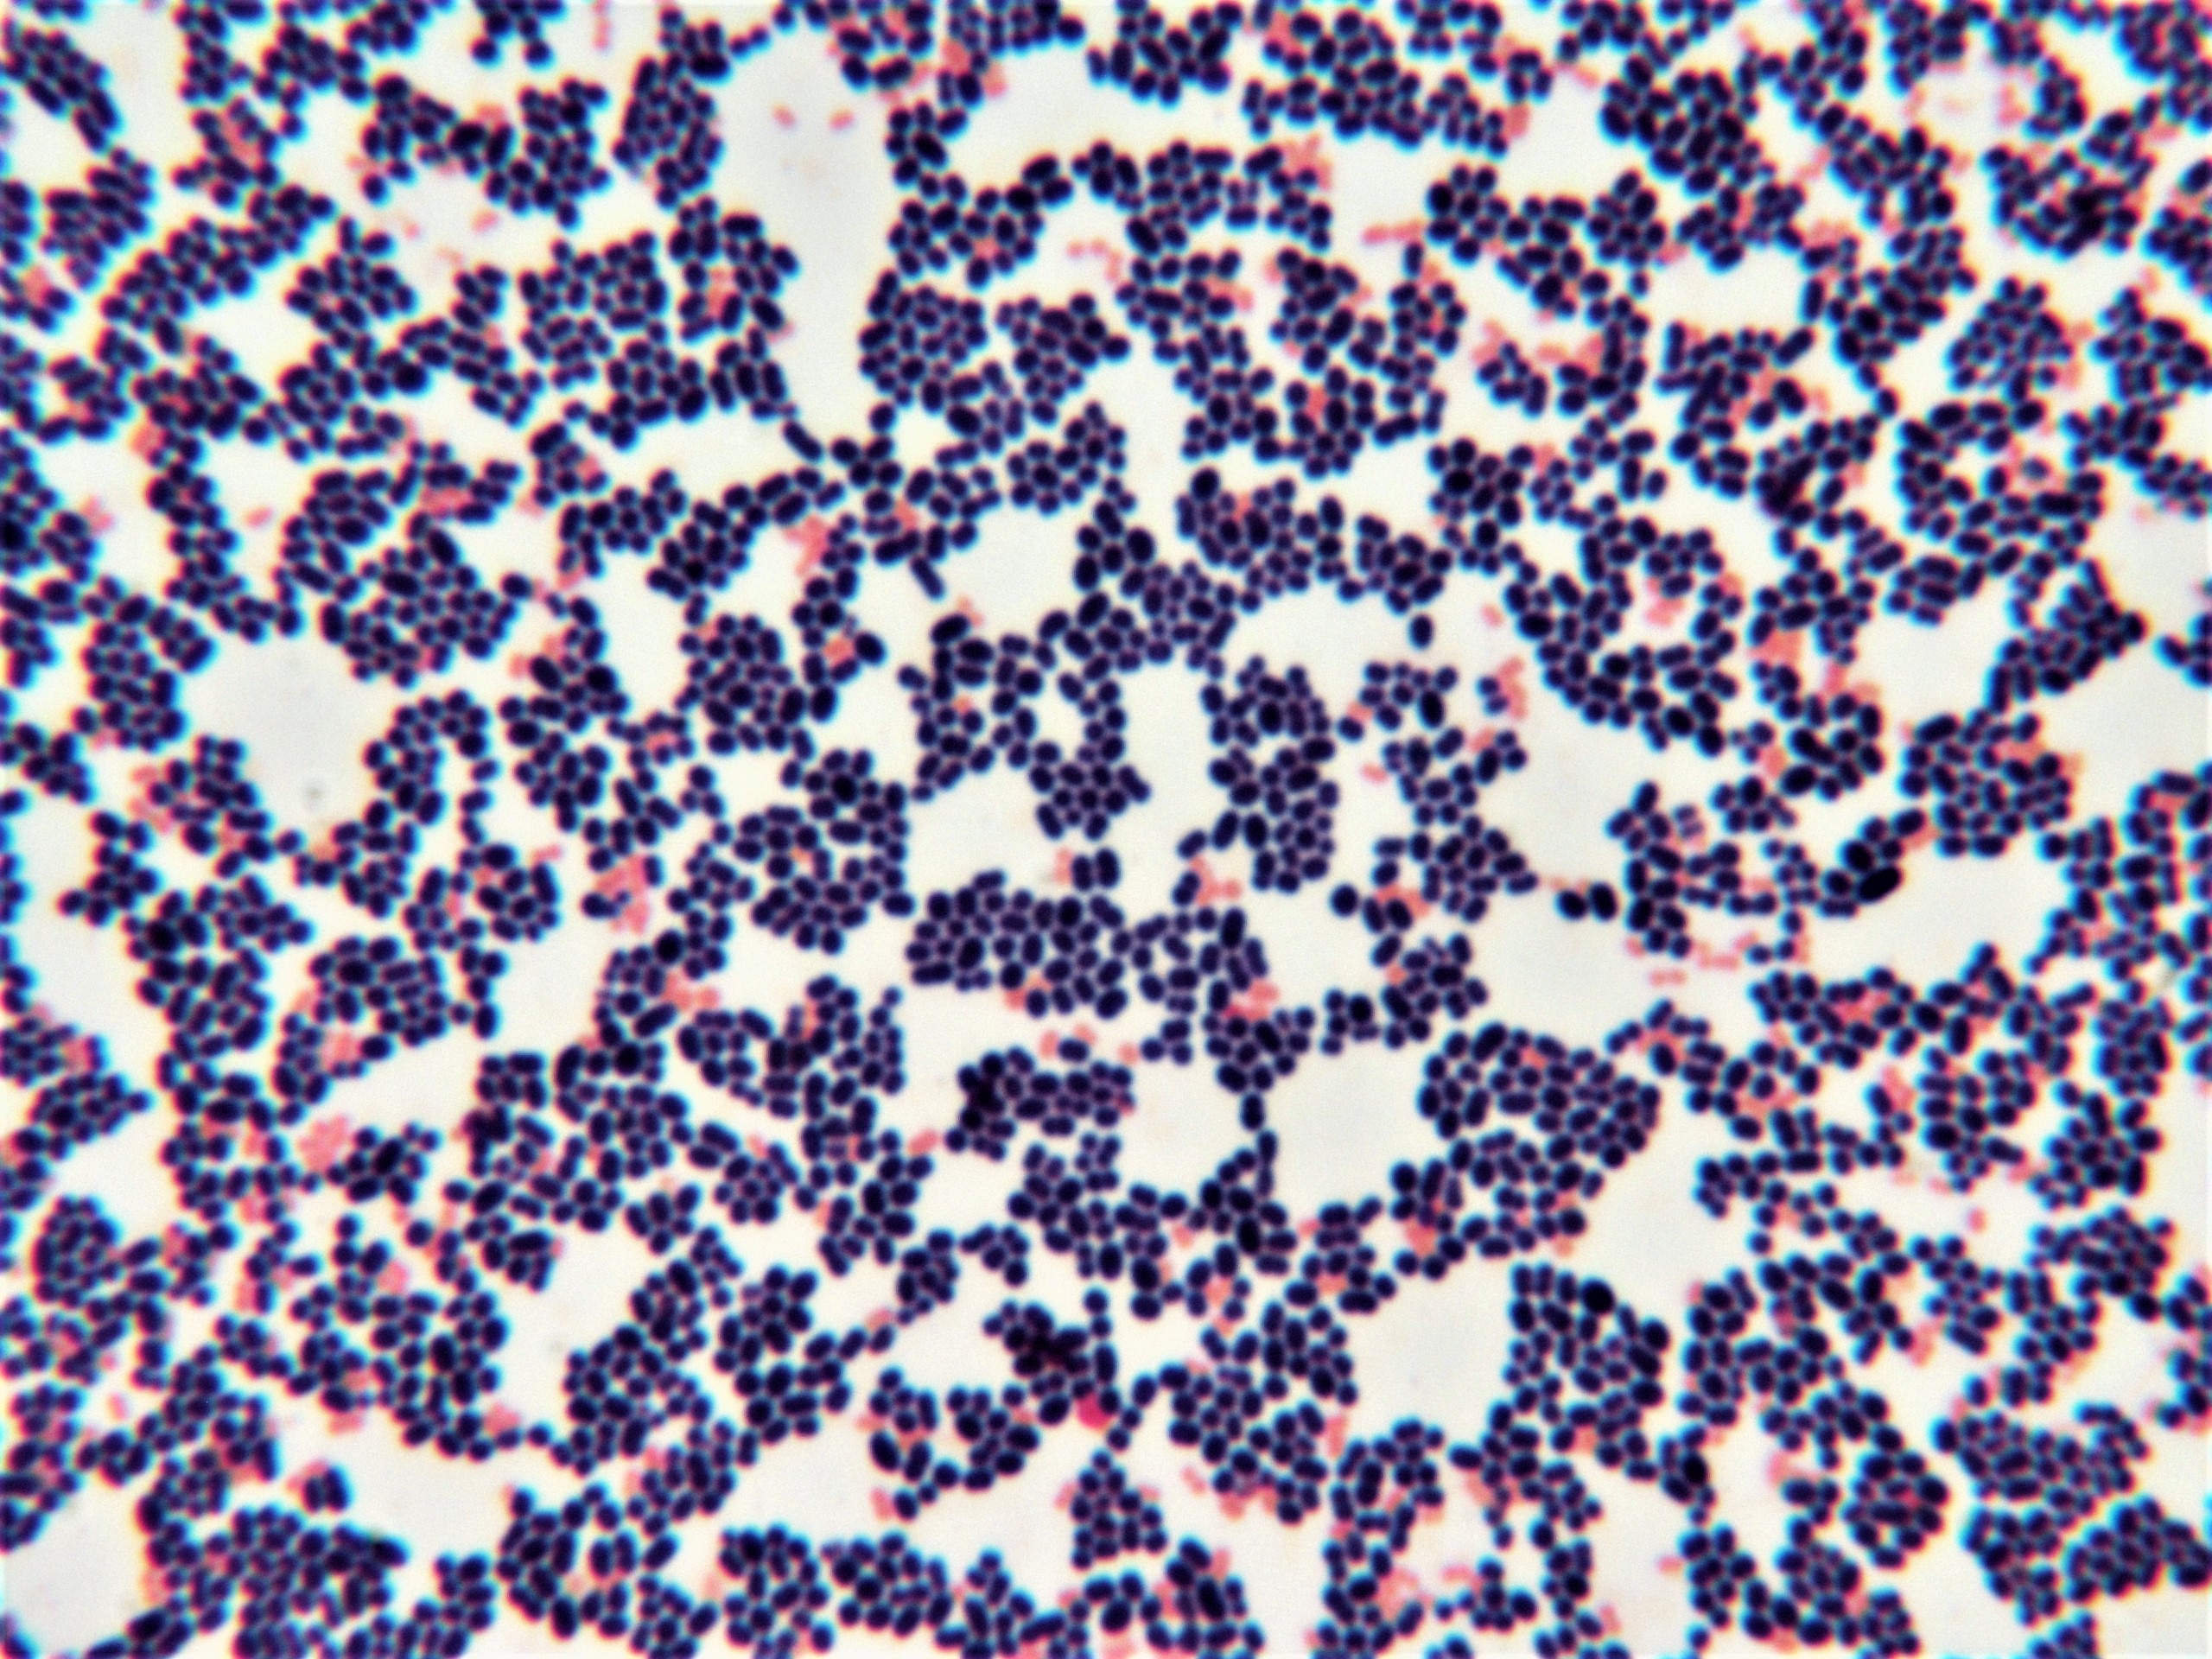 kräftig violettblau gefärbte kugelförmige Strukturen